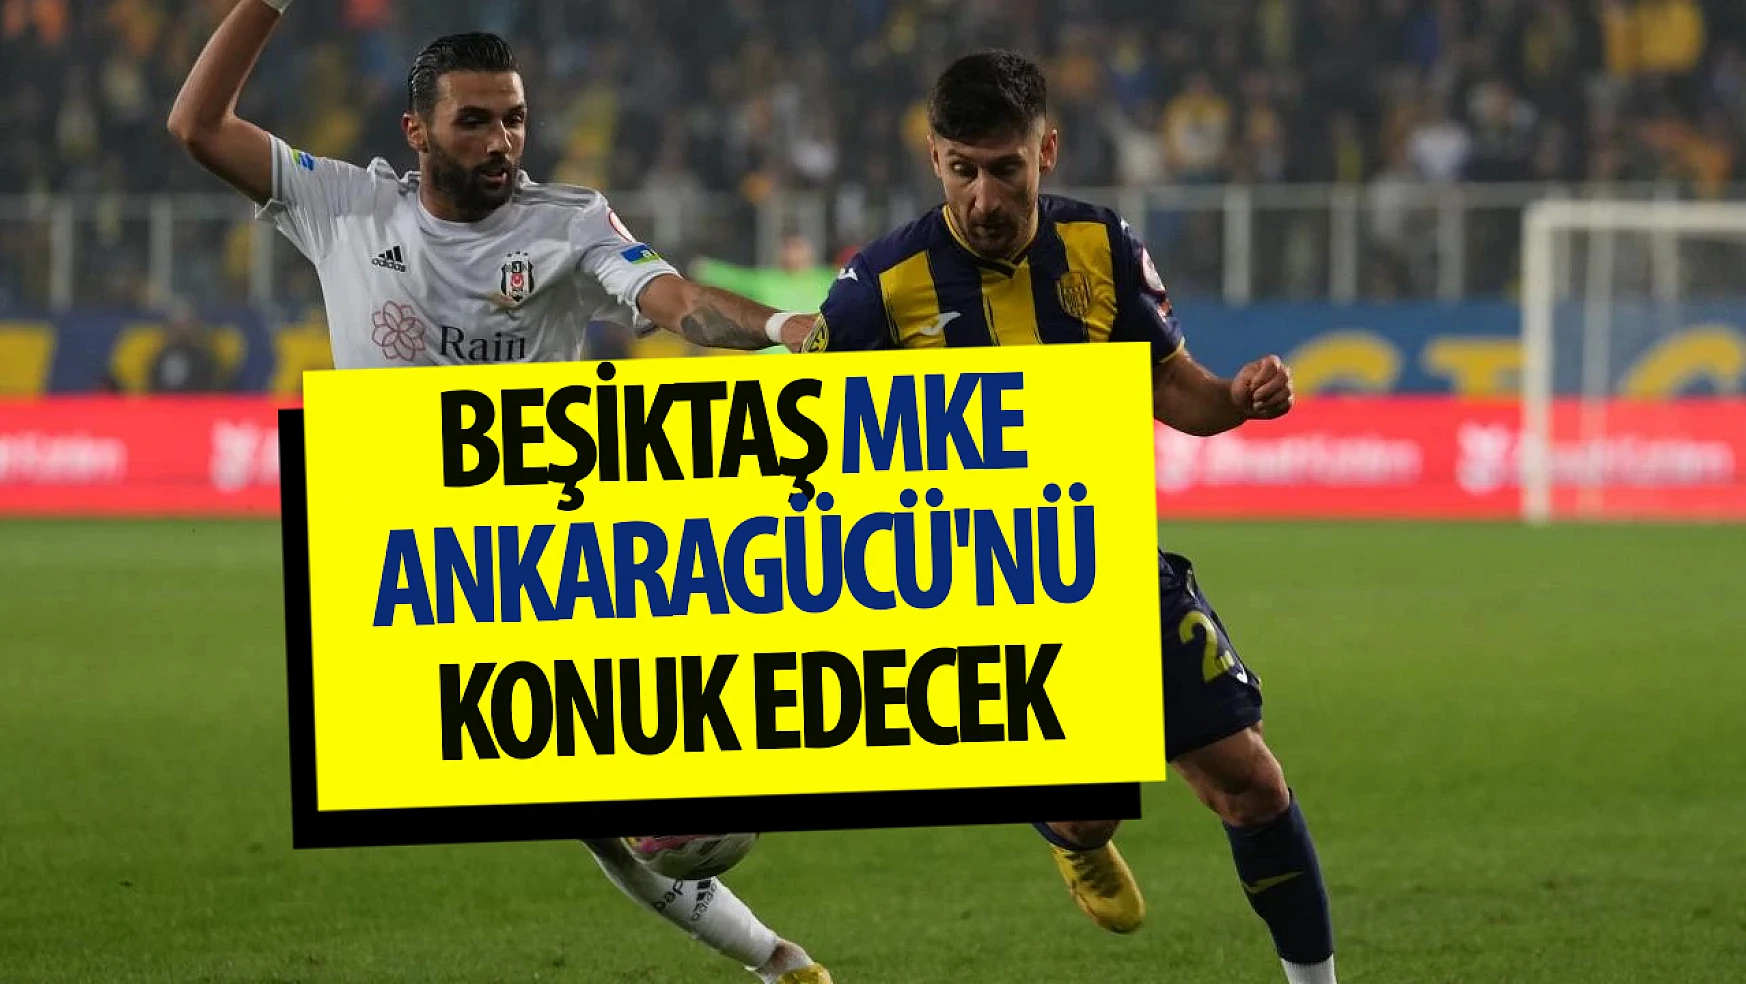 Beşiktaş MKE Ankaragücü'nü konuk edecek